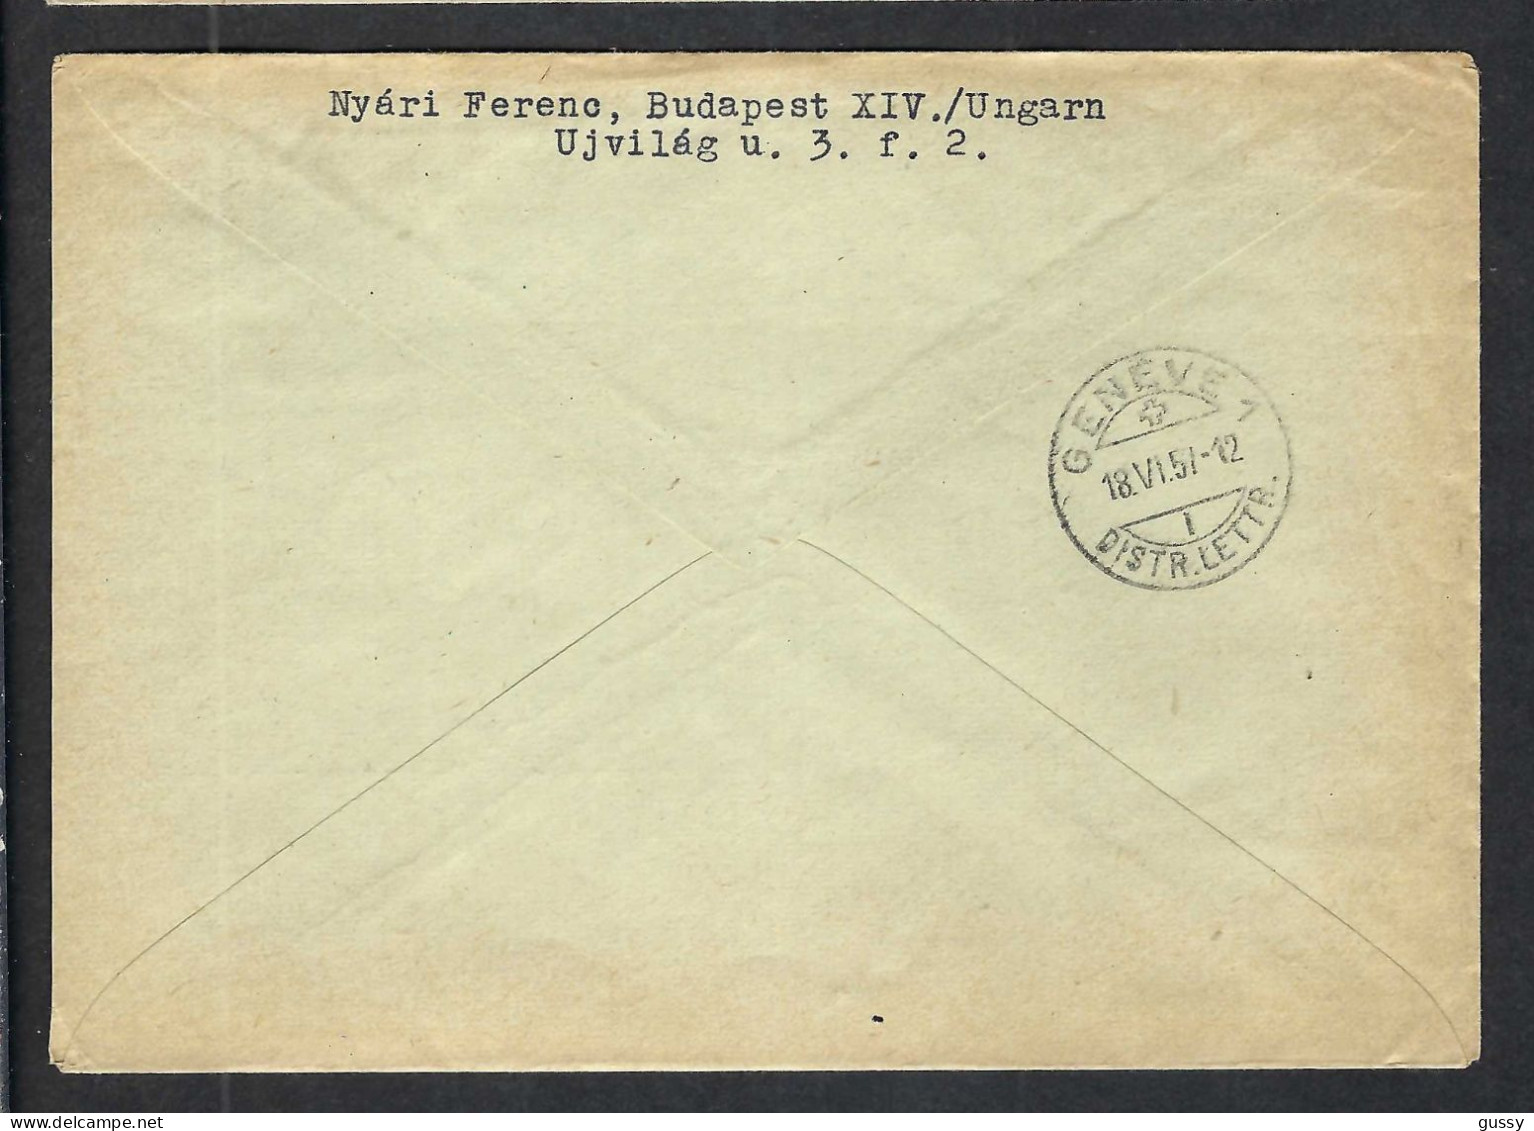 HONGRIE 1957: LSC Rec. De Budapest Pour La Croix-Rouge De Genève - Brieven En Documenten